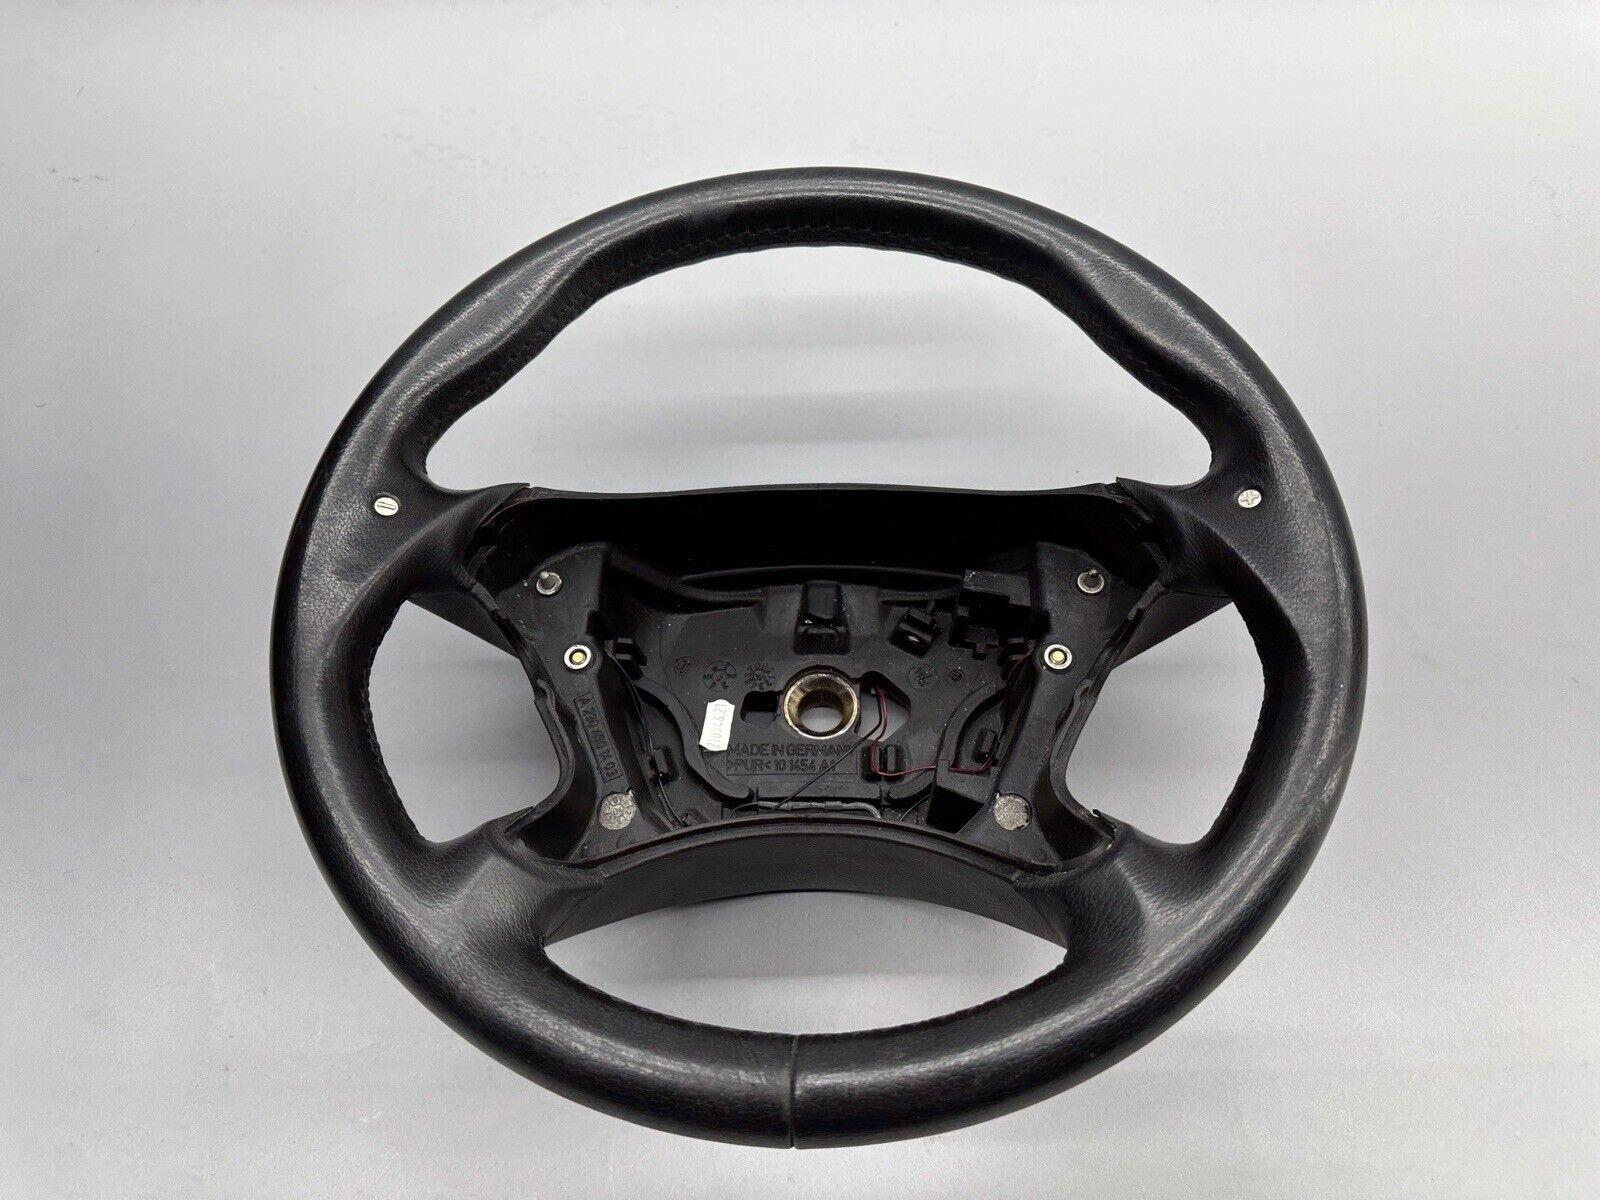 02-09 Mercedes CLK350 CLS500 CLK55 AMG 4 Spoke Steering Wheel w/ Paddle Shifters